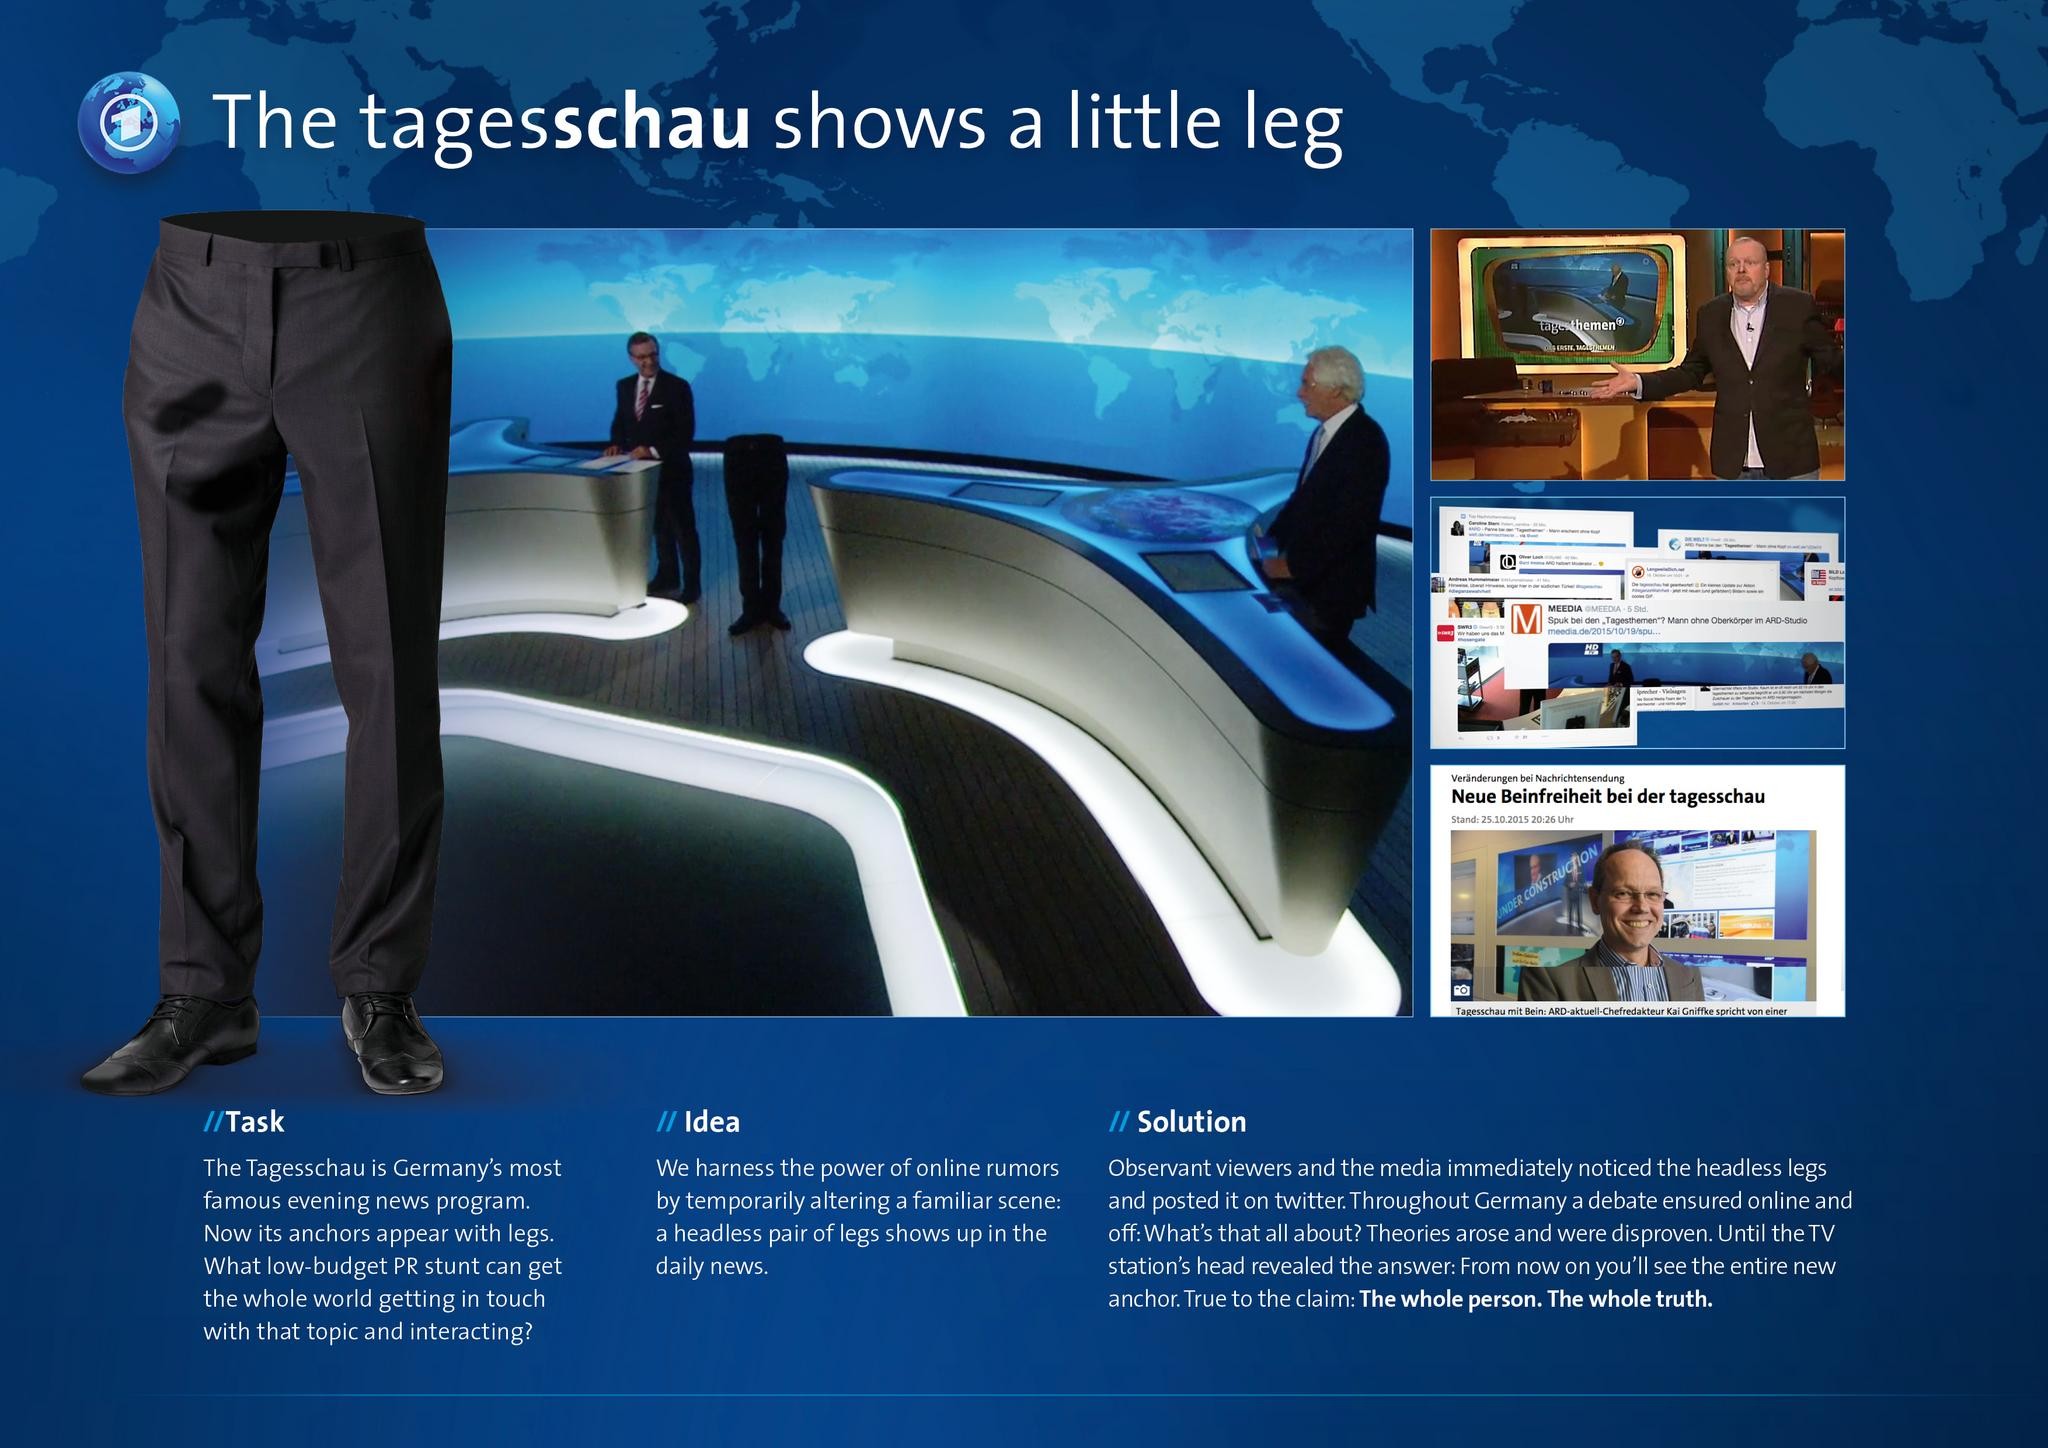 The Tagesschau shows a little leg